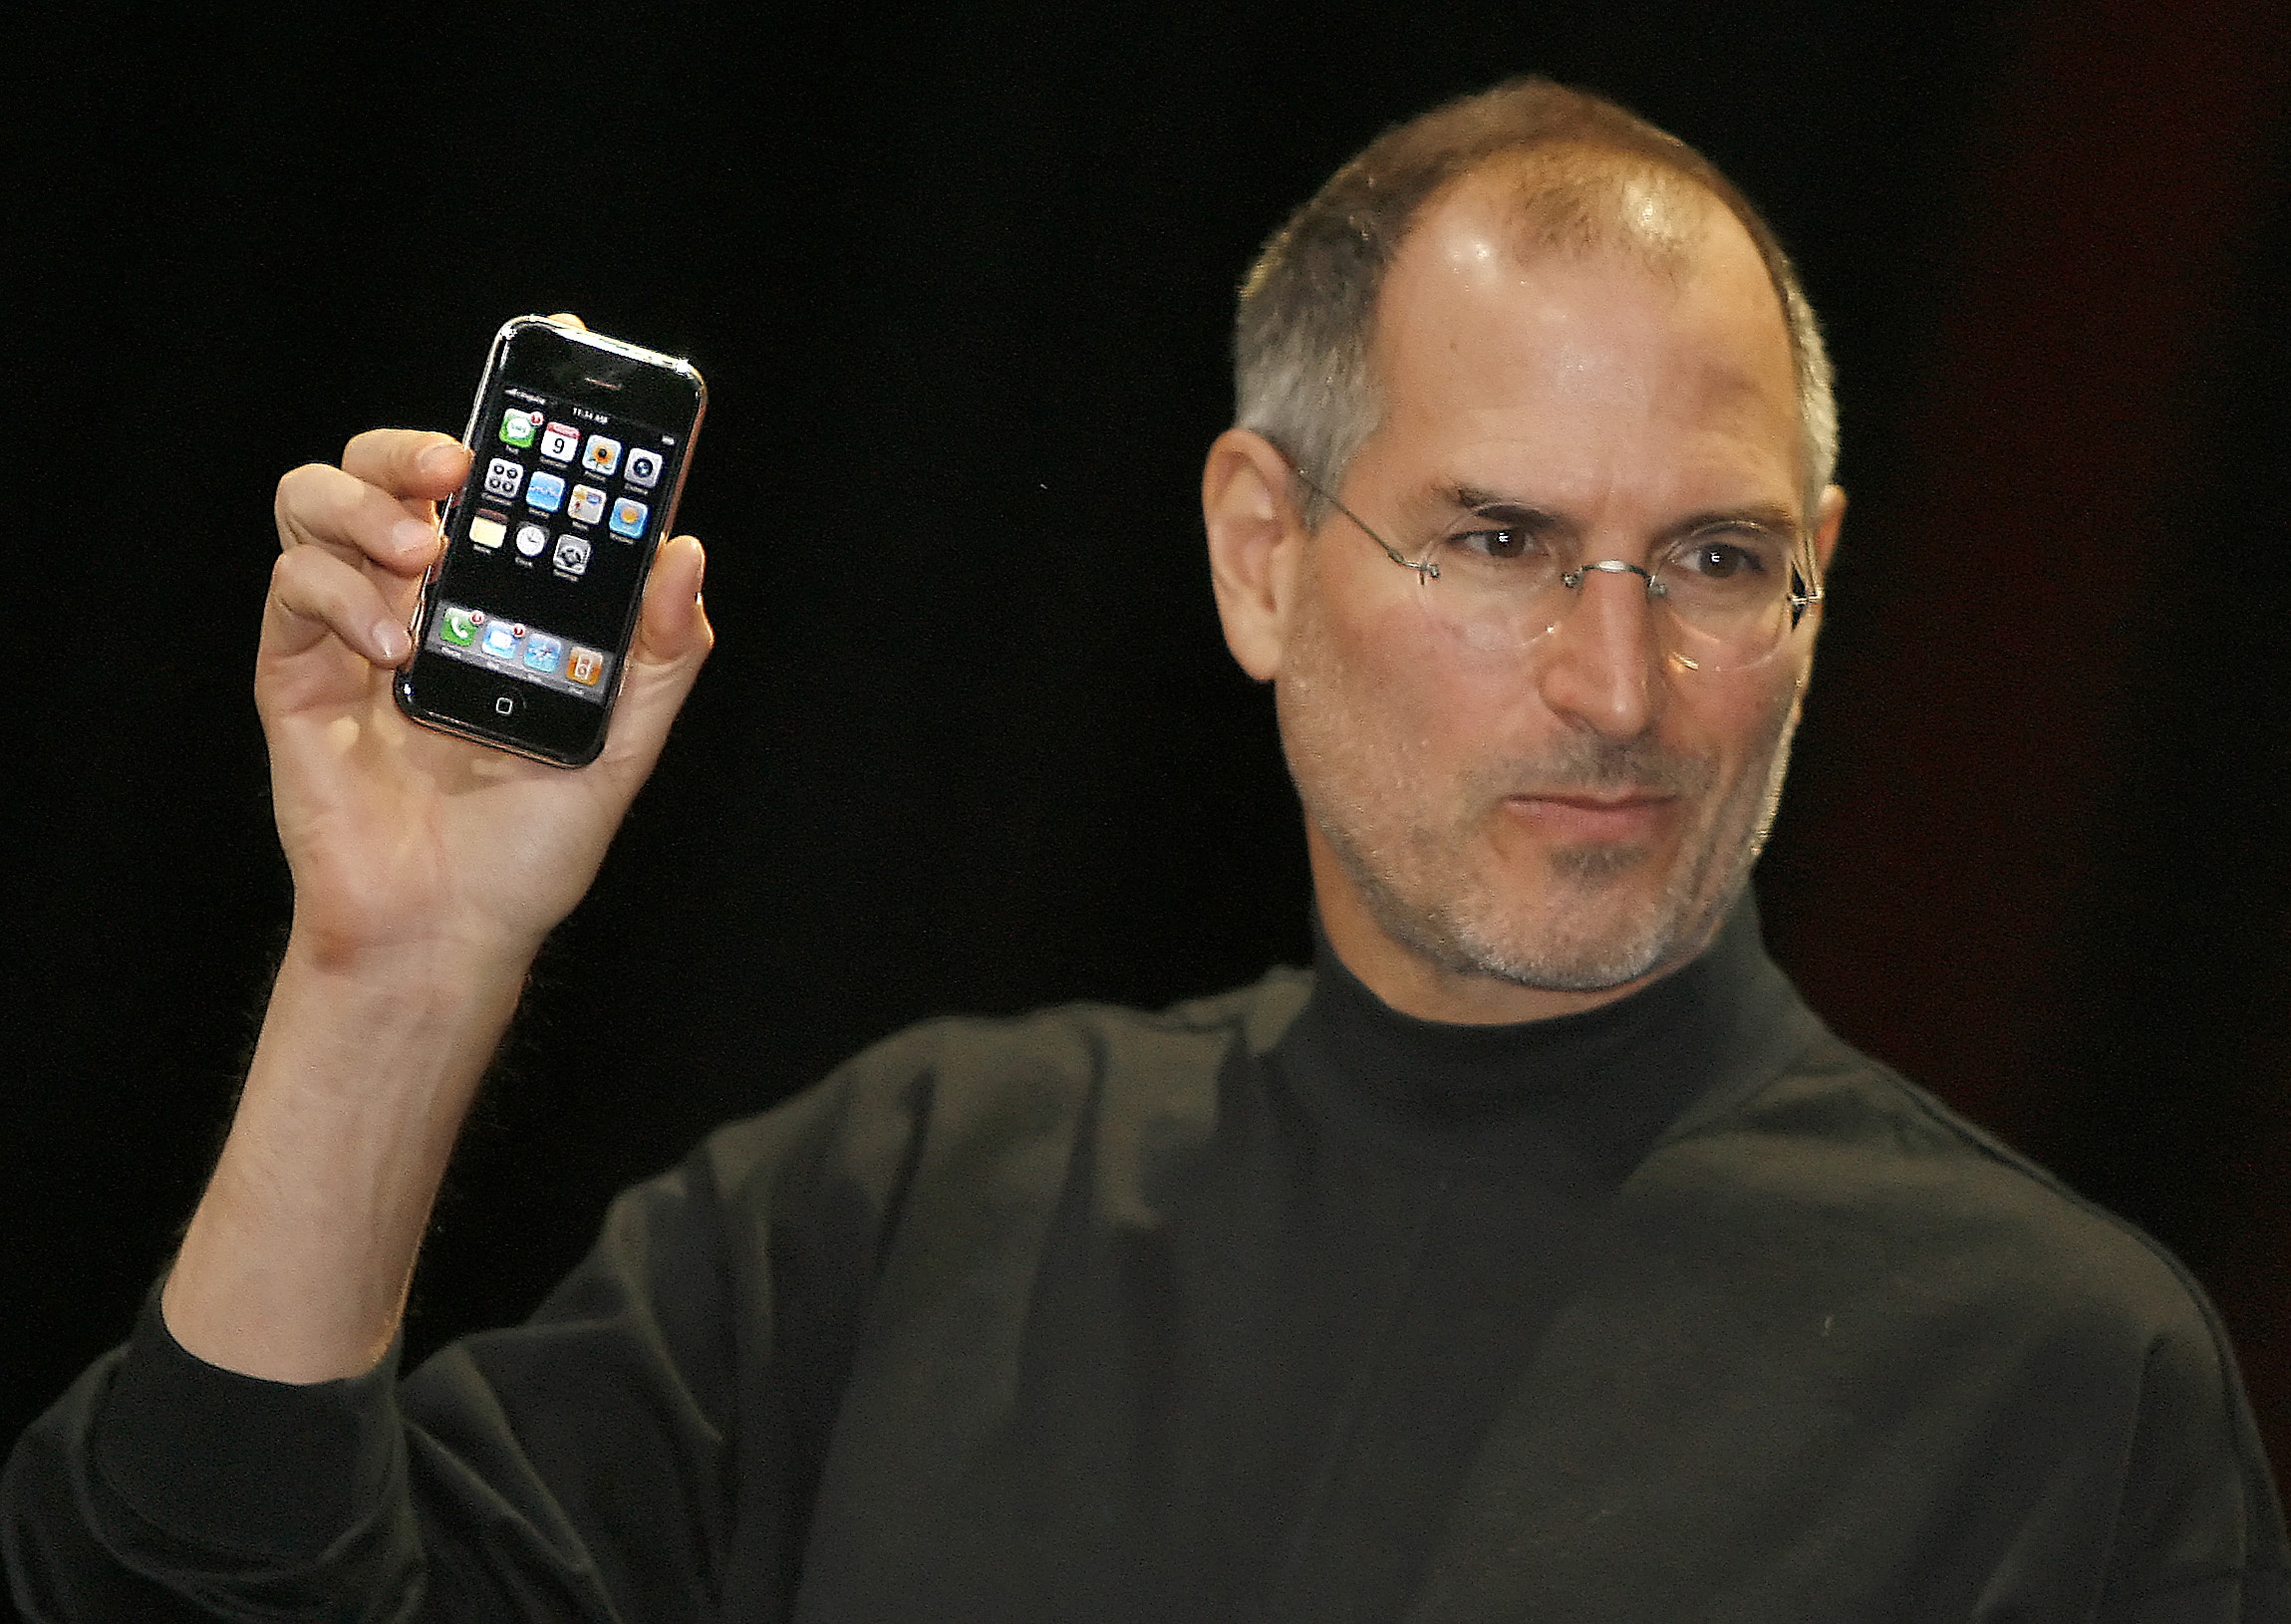 Steve Jobs, pentru care Apple introduce un tribut, cu primul iPhone ăn mână, pe scenă în 2007